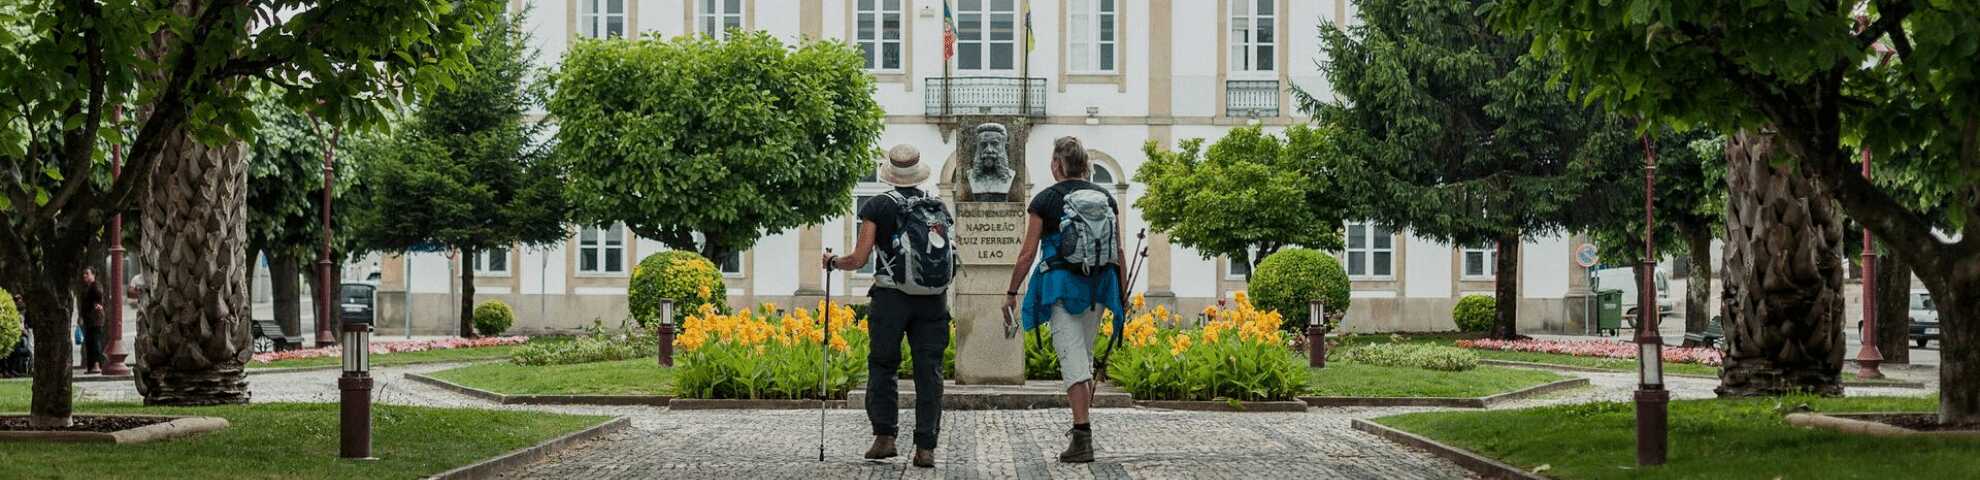 Dos peregrinos llegando a la Câmara Municipal de Albergaria-a-Velha